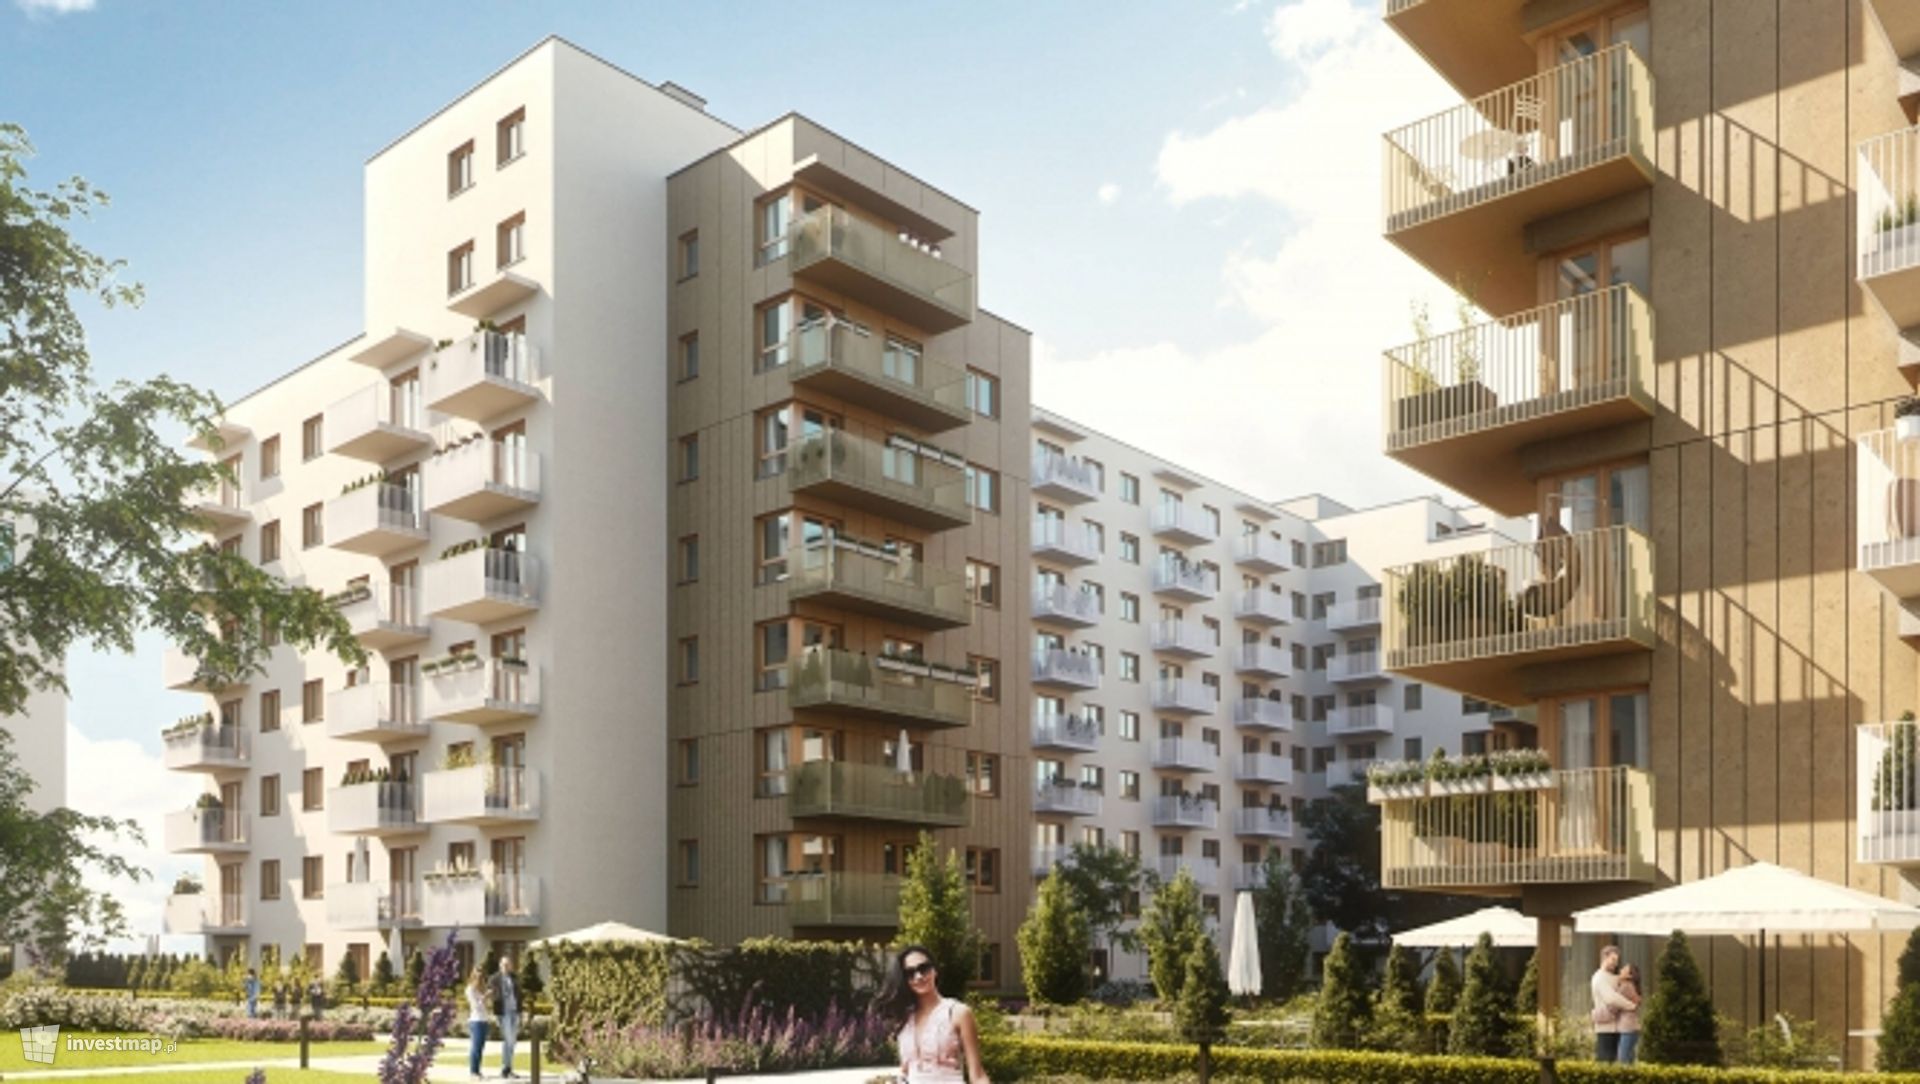 Grupa Marvipol zawarła umowę sprzedaży lokali mieszkalnych w Moko Botanika w Warszawie